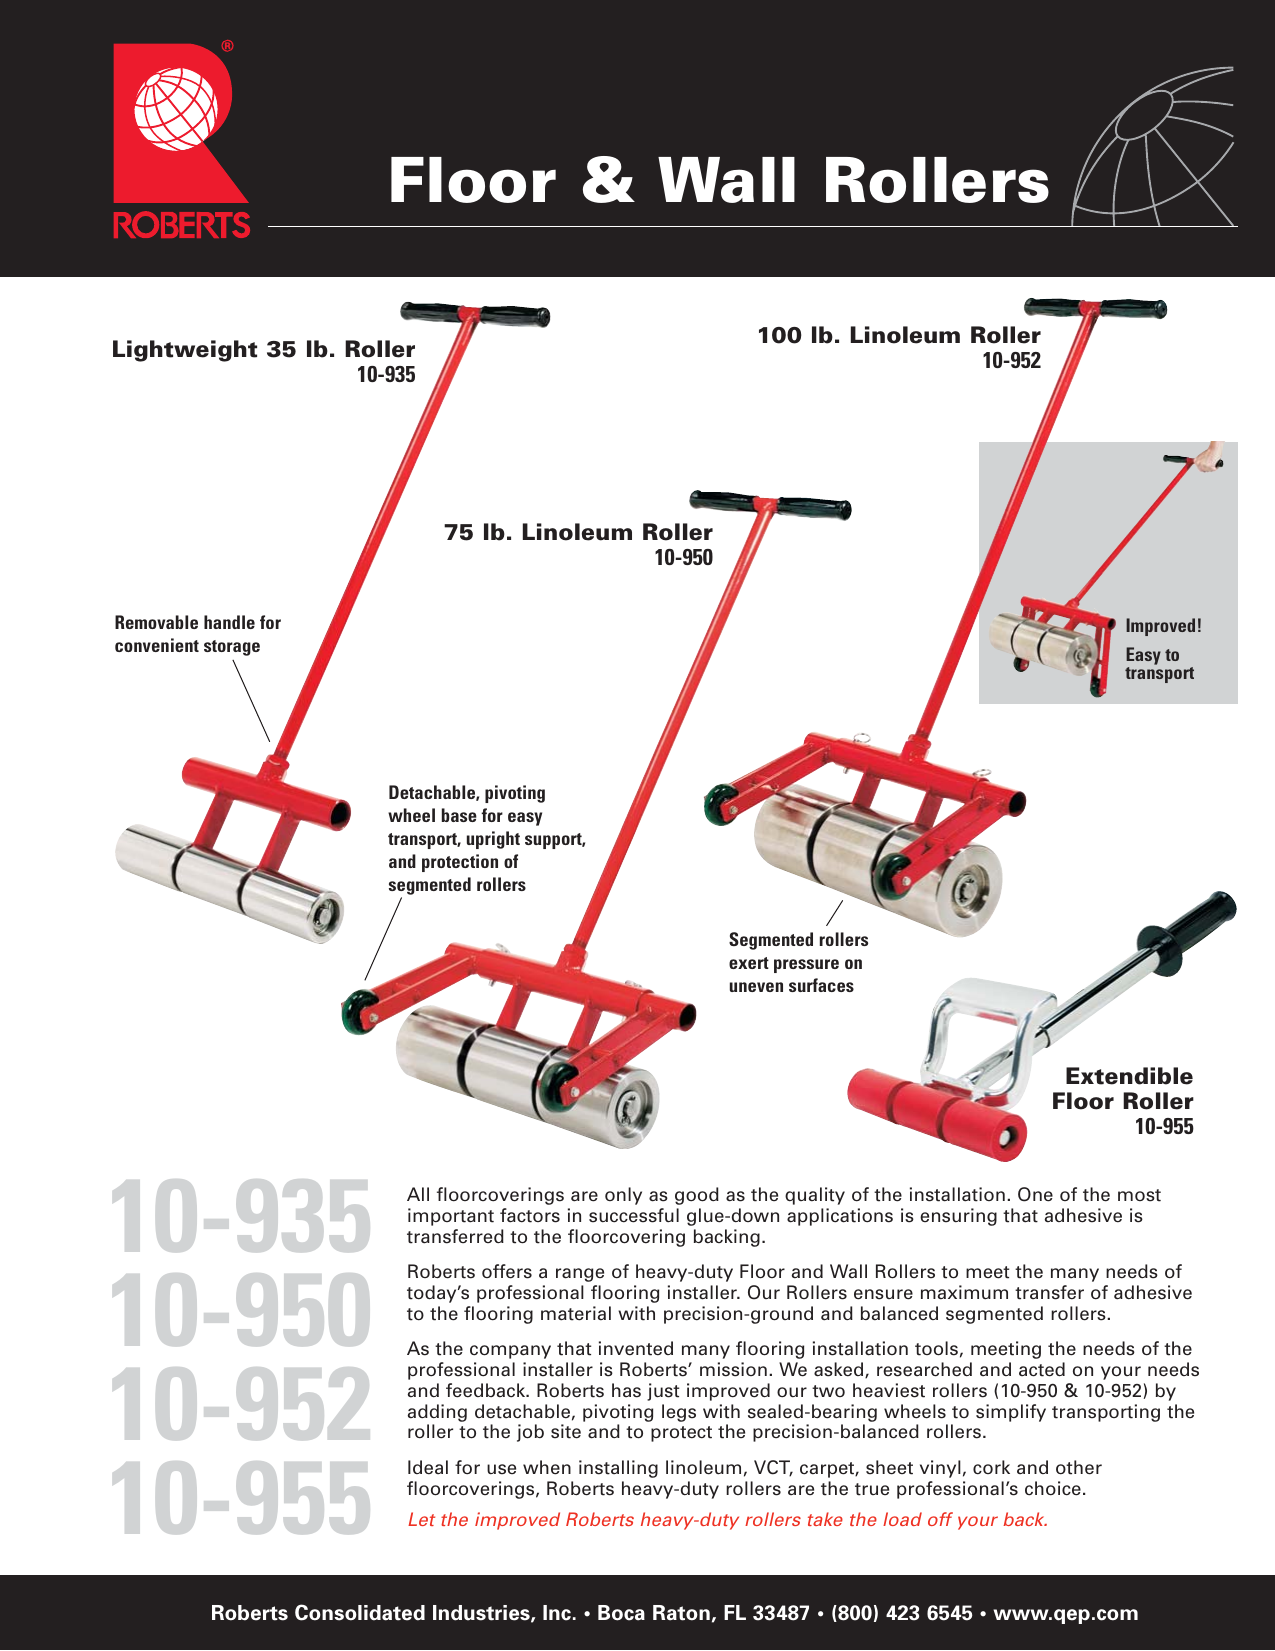 Roberts 10 955 Extendable Floor Roller, How To Use A Vinyl Floor Roller